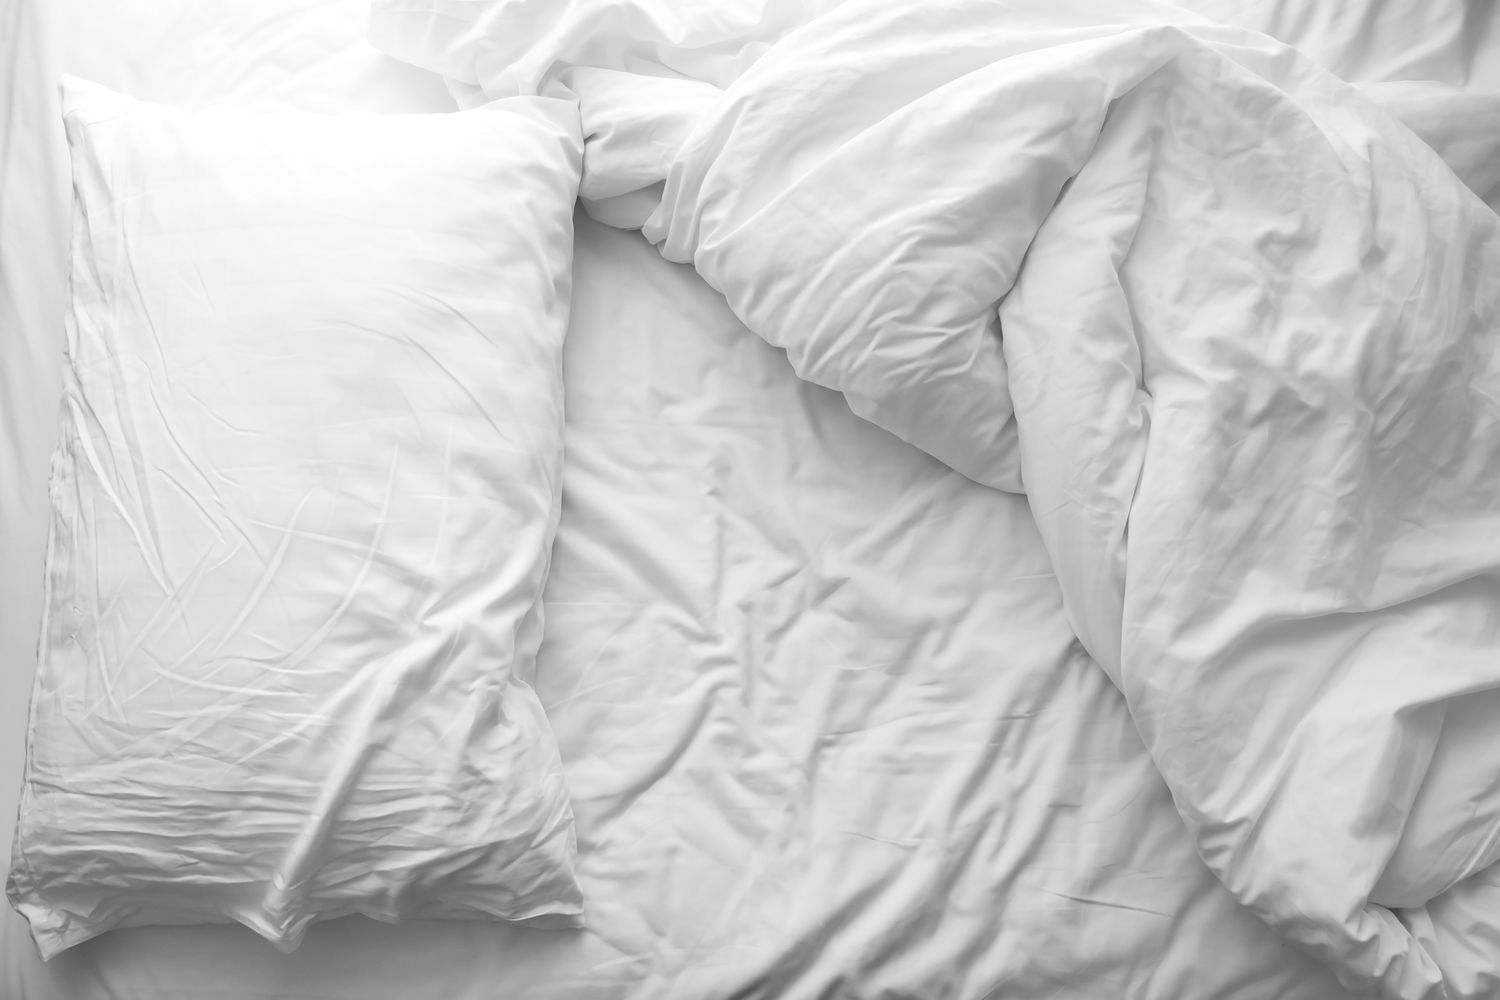 Lit en désordre. Oreiller blanc avec couverture sur le lit non fait. Concept de détente après la matinée.